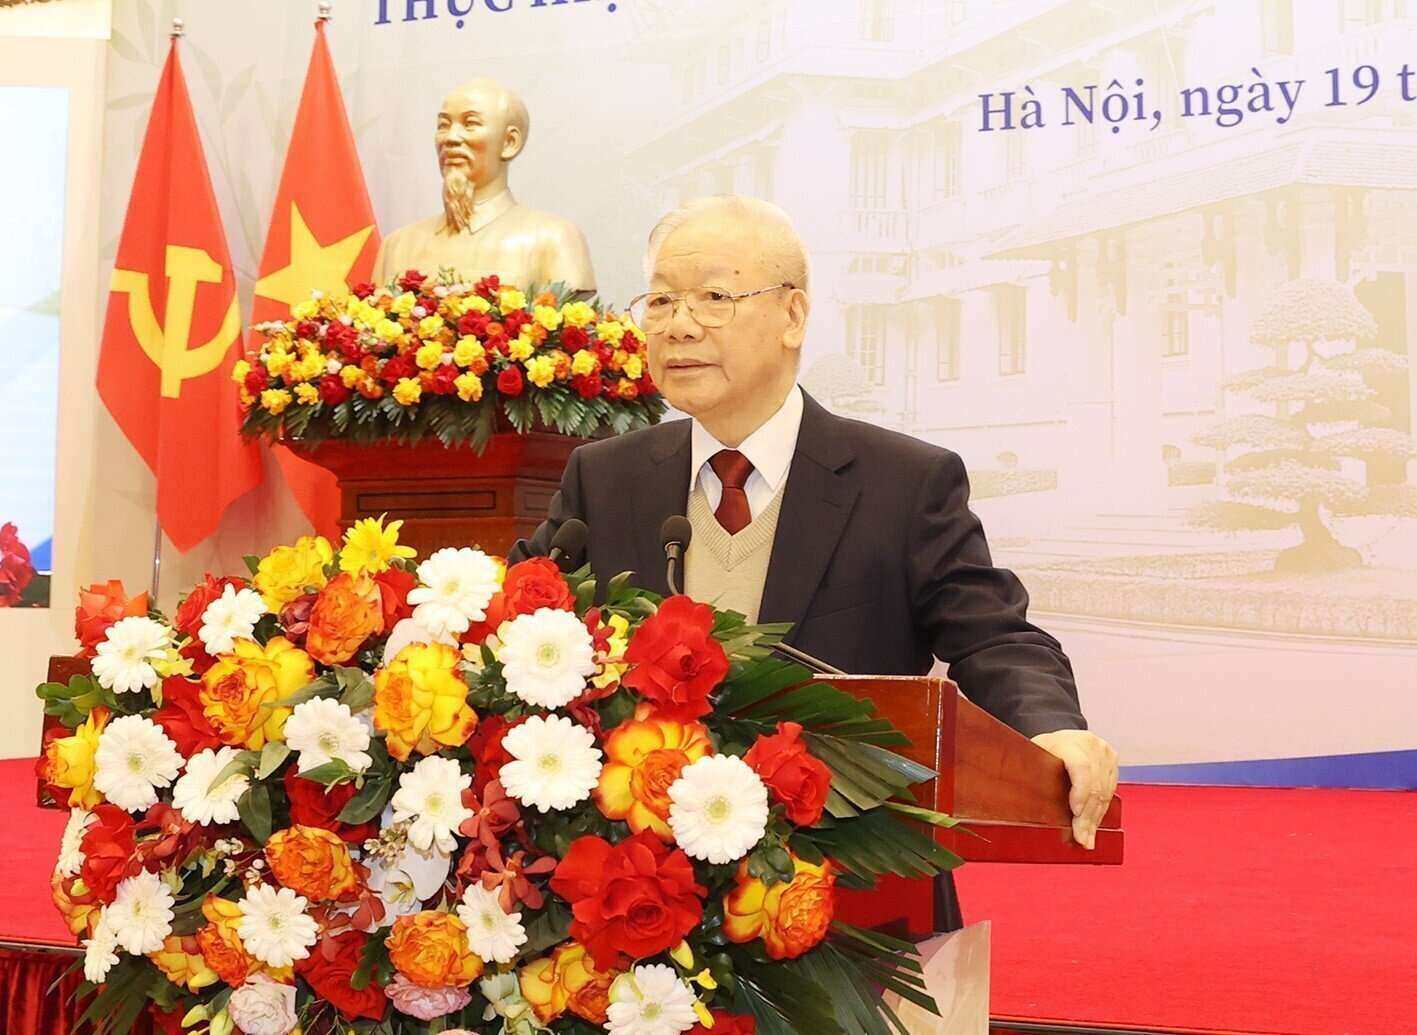 Tổng Bí thư Nguyễn Phú Trọng phát biểu chỉ đạo tại Hội nghị Ngoại giao lần thứ 32. Ảnh: TTXVN